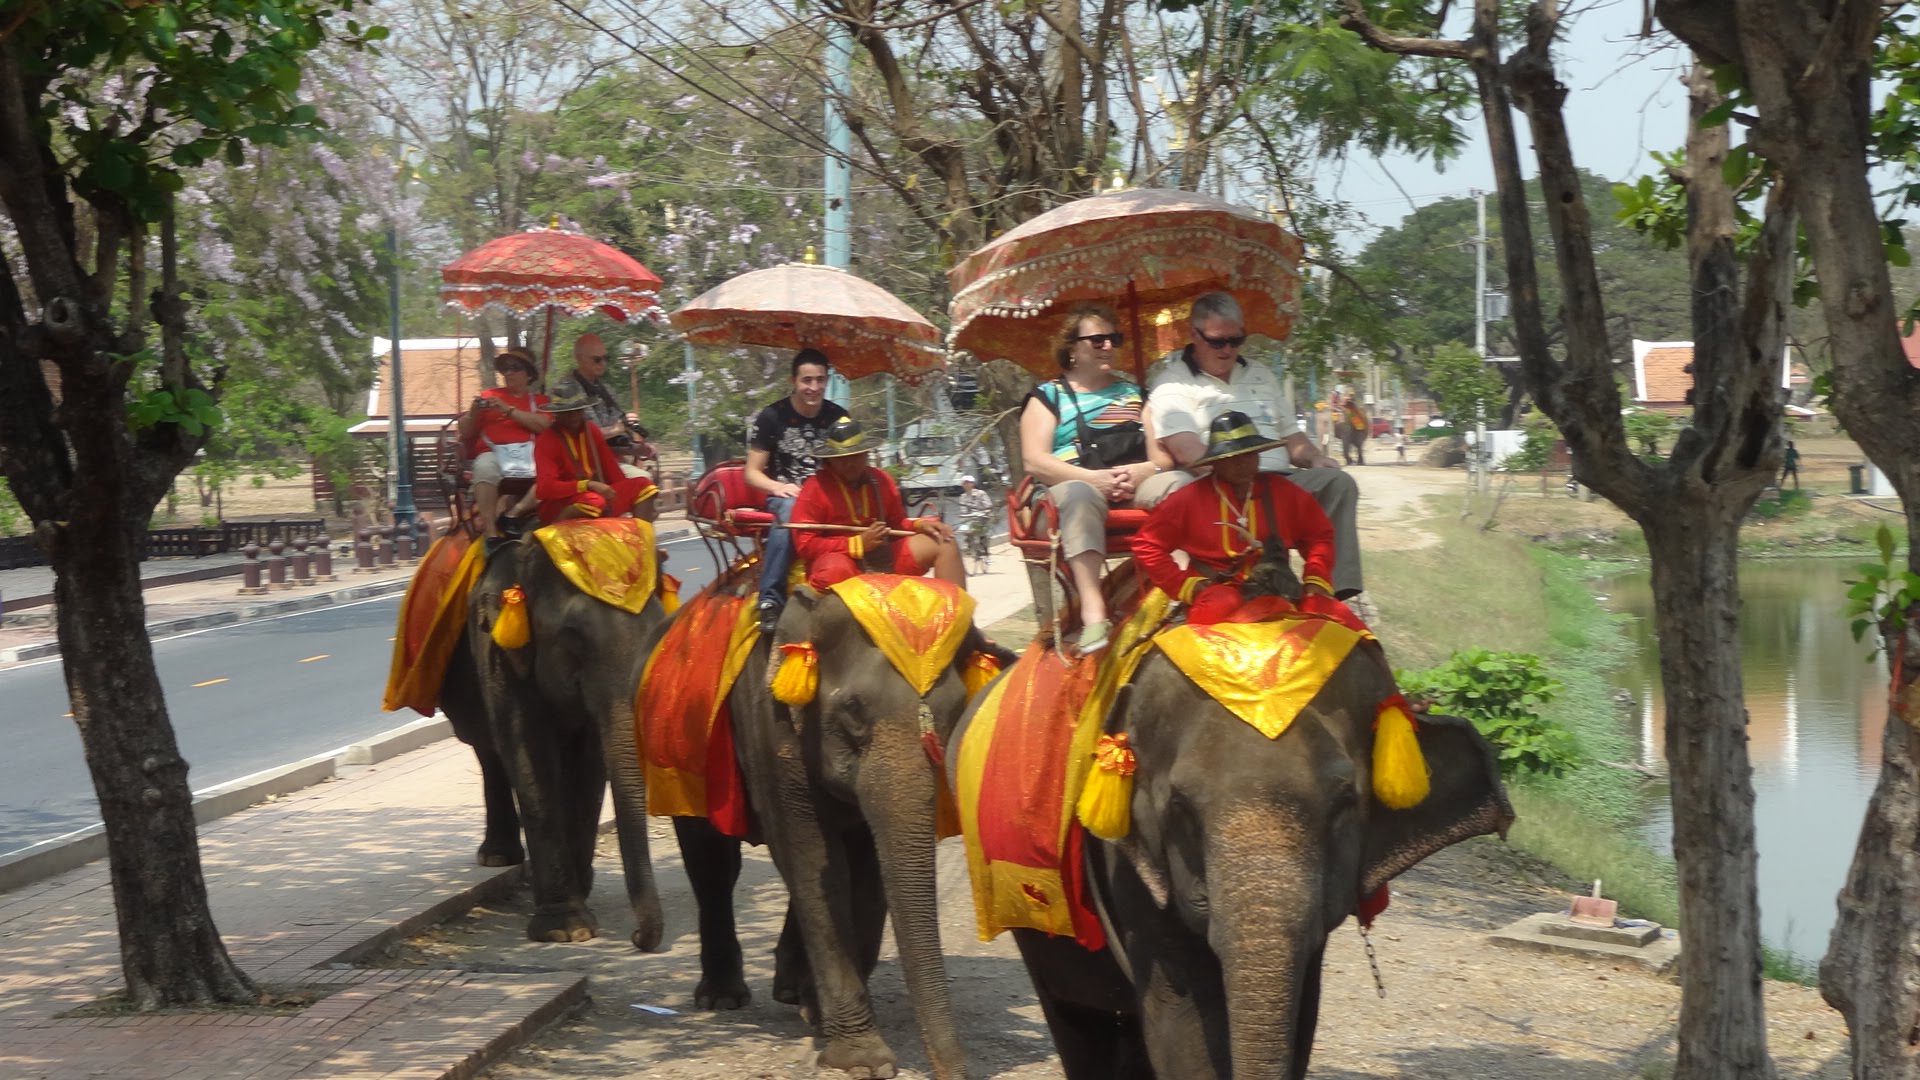 Elephant ride photo